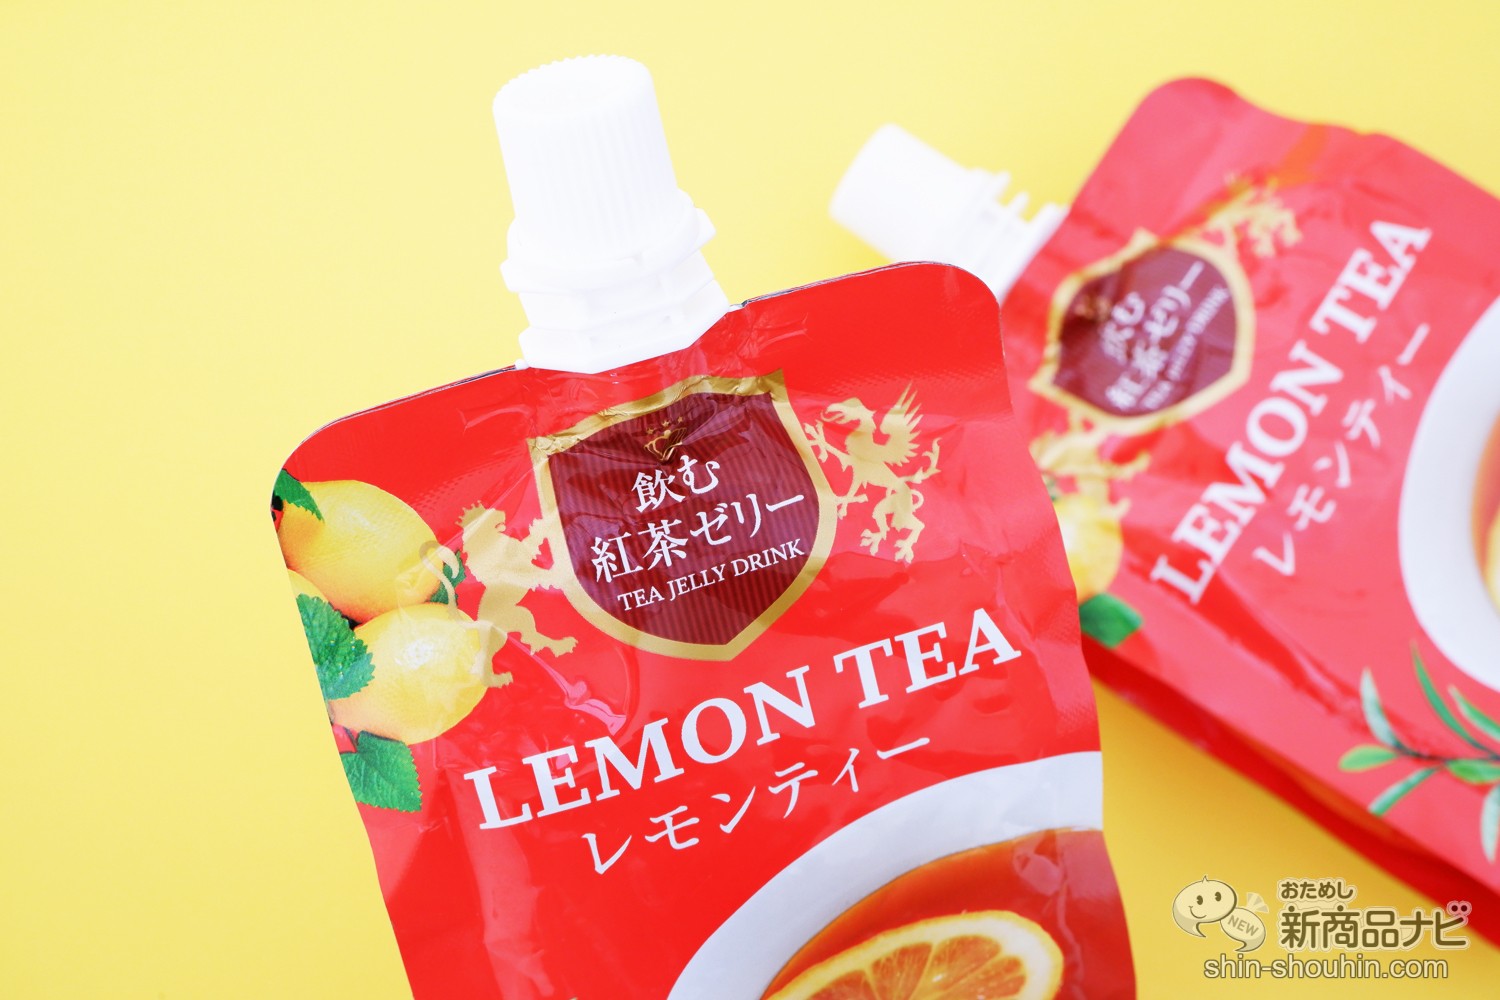 おためし新商品ナビ Blog Archive 新感覚の紅茶ゼリー 忙しい毎日のお供に 飲む紅茶ゼリー レモンティー アレンジレシピもご紹介